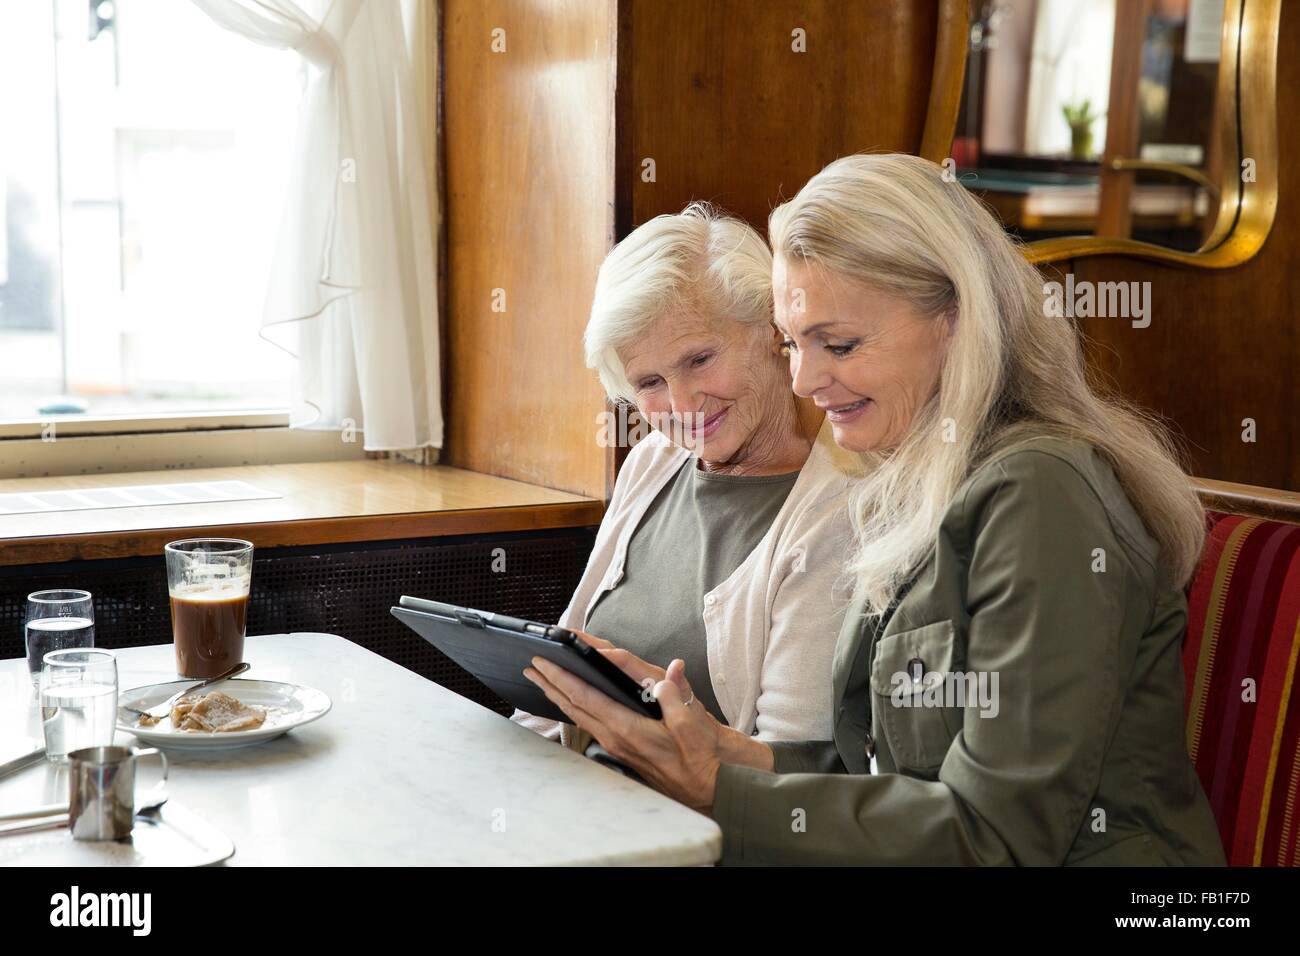 Madre e figlia insieme seduta in cafe, guardando a tavoletta digitale Foto Stock